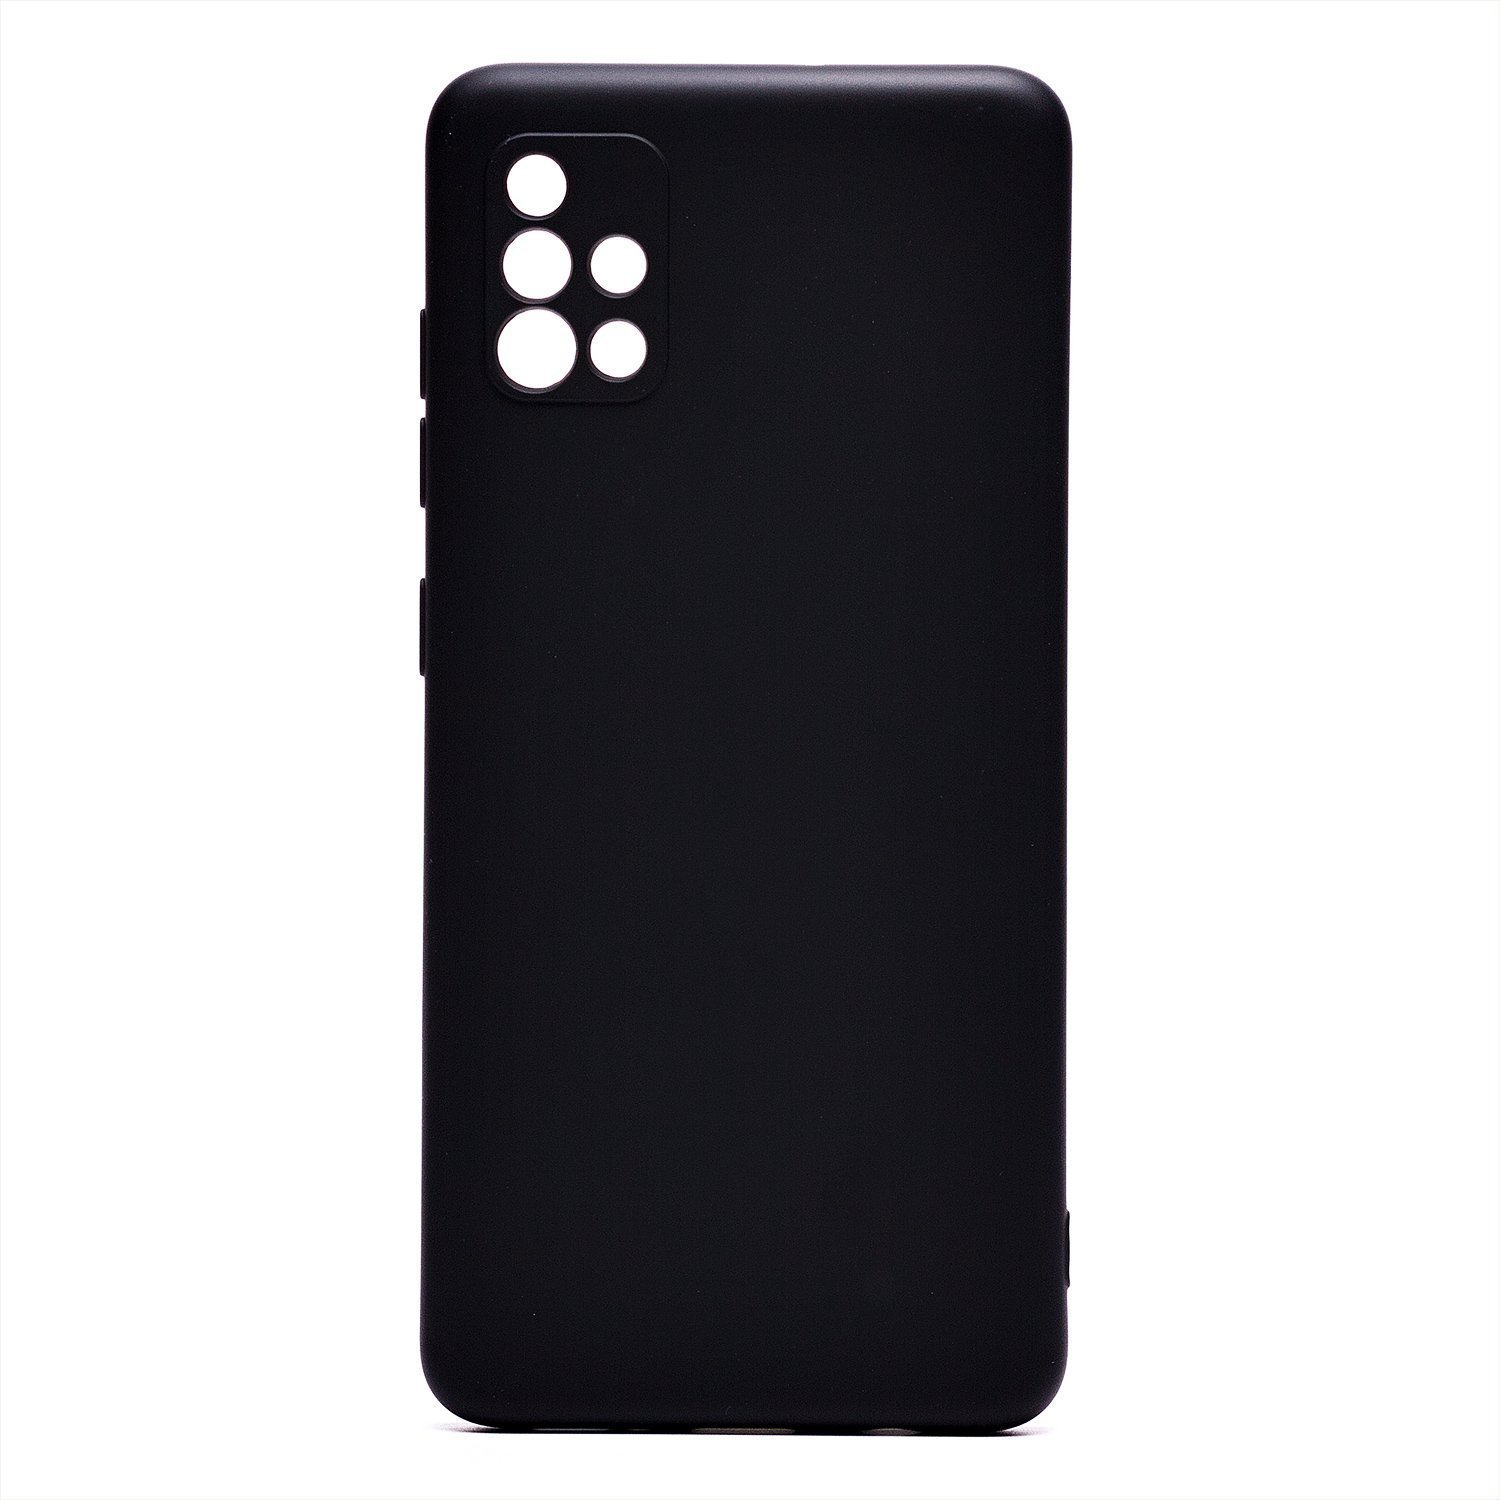 Чехол-накладка Activ Full Original Design для смартфона Samsung SM-A515 Galaxy A51, силикон, черный (209015)